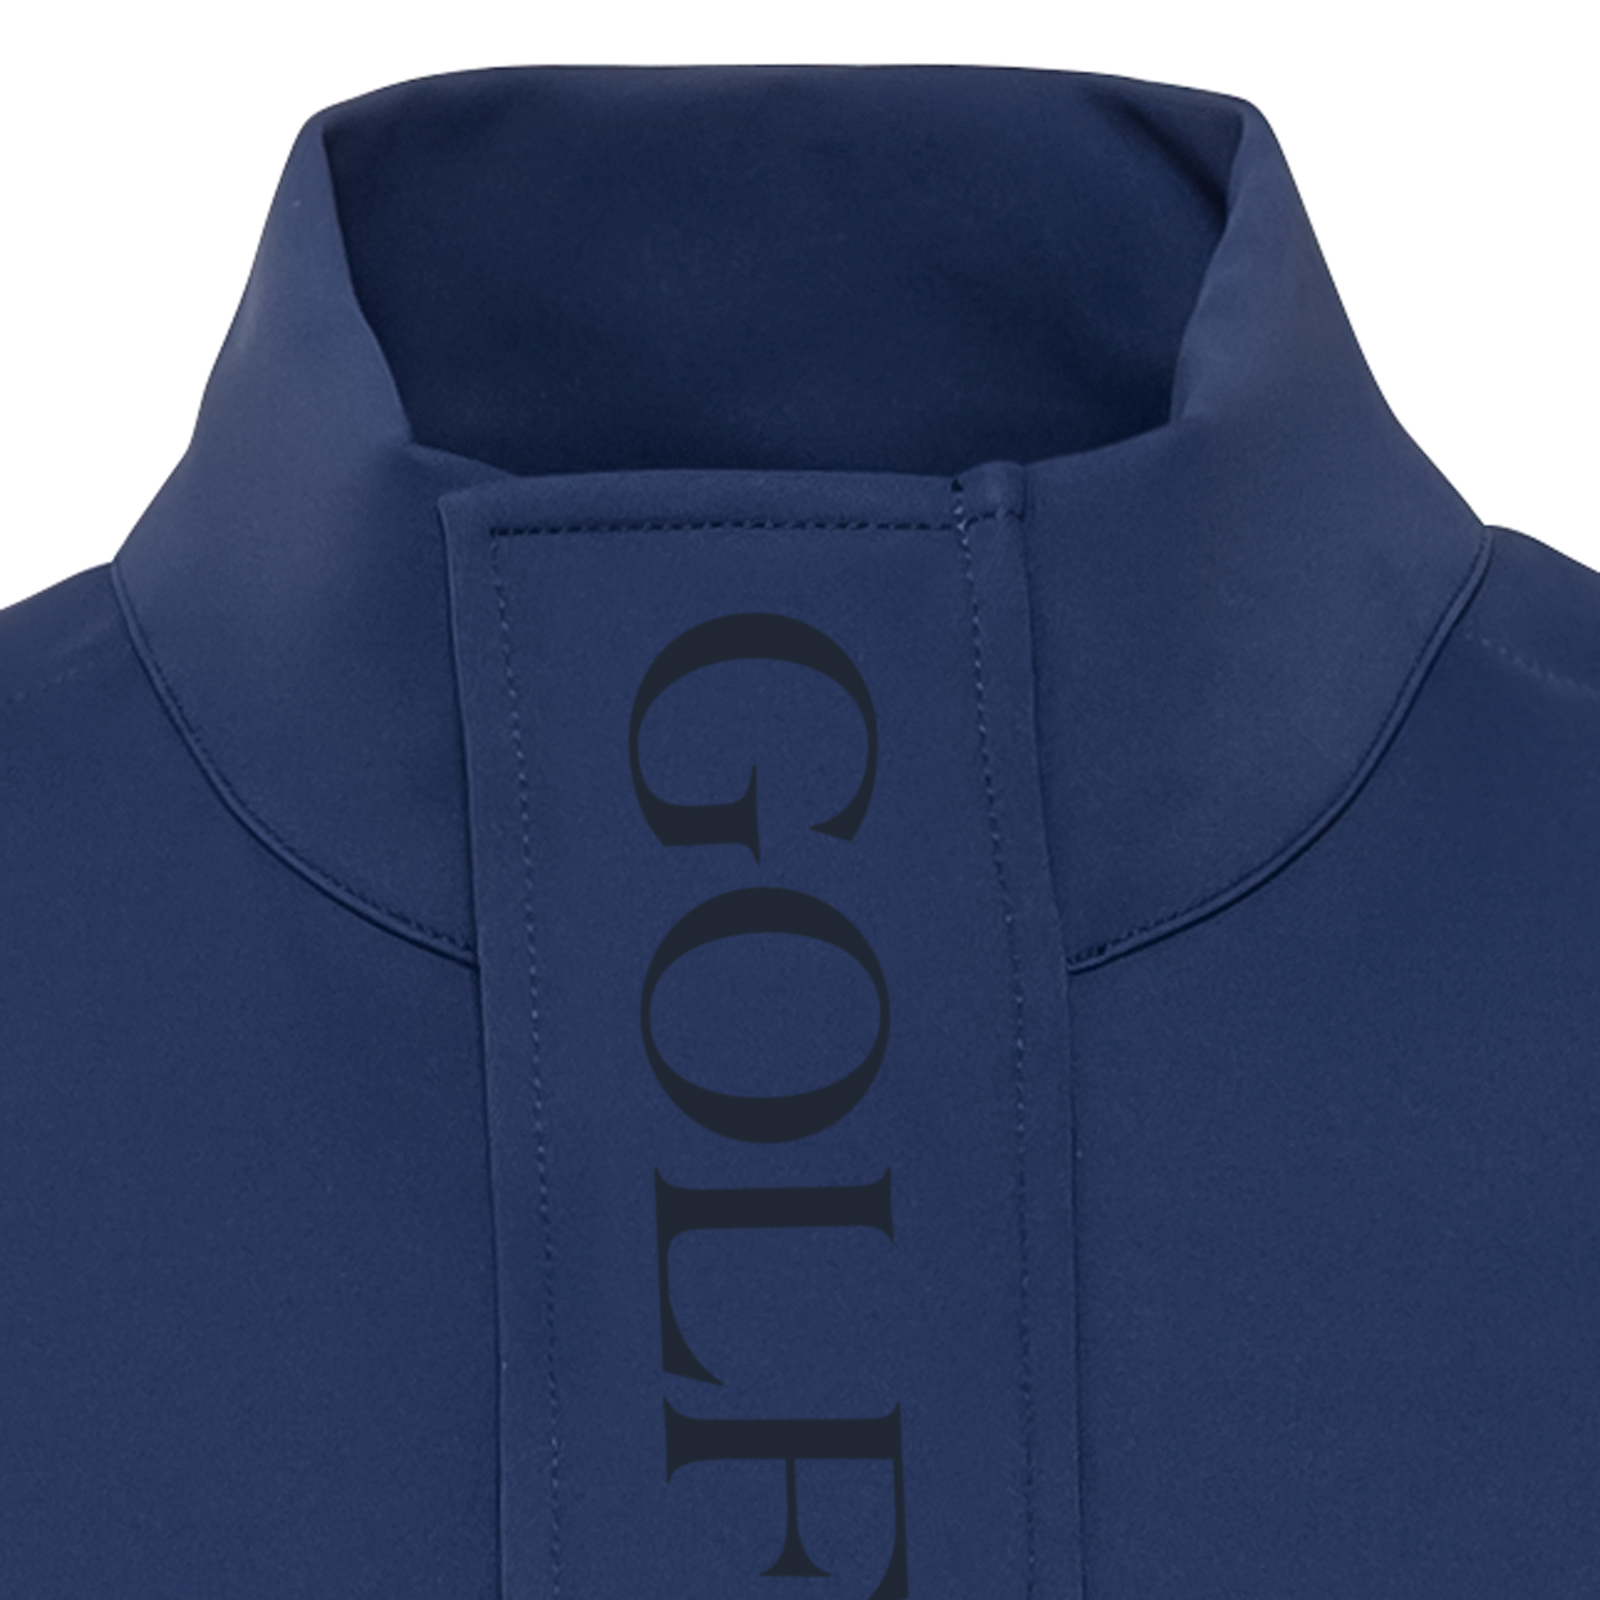 Chaqueta de golf impermeable con protección contra el frío para hombre